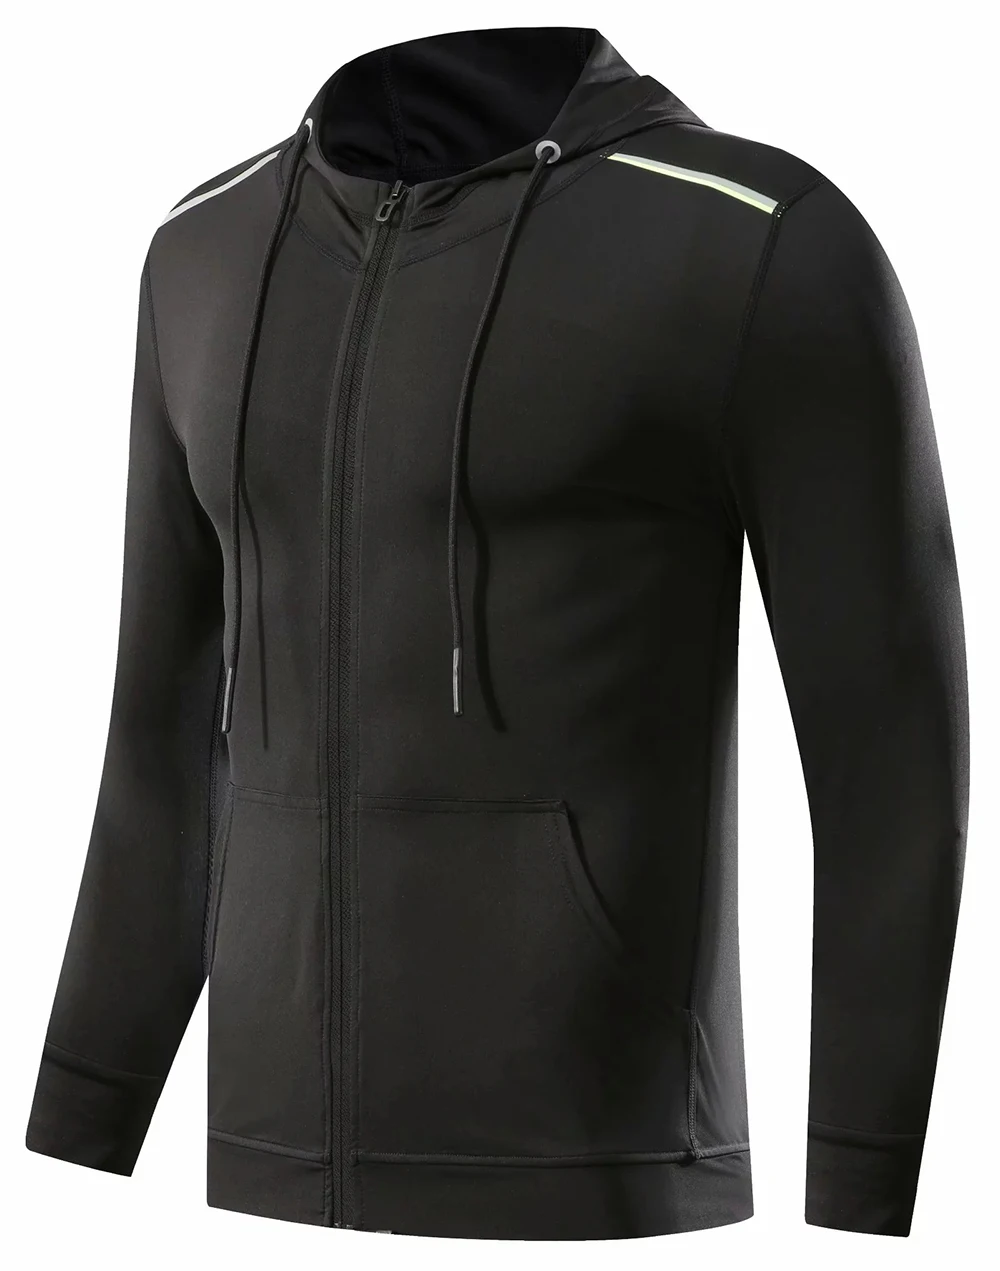 Мужская спортивная одежда с длинным рукавом для бодибилдинга и бега, облегающие куртки с капюшоном для баскетбола, футбола, тренировок, фитнеса, одежда для спортзала